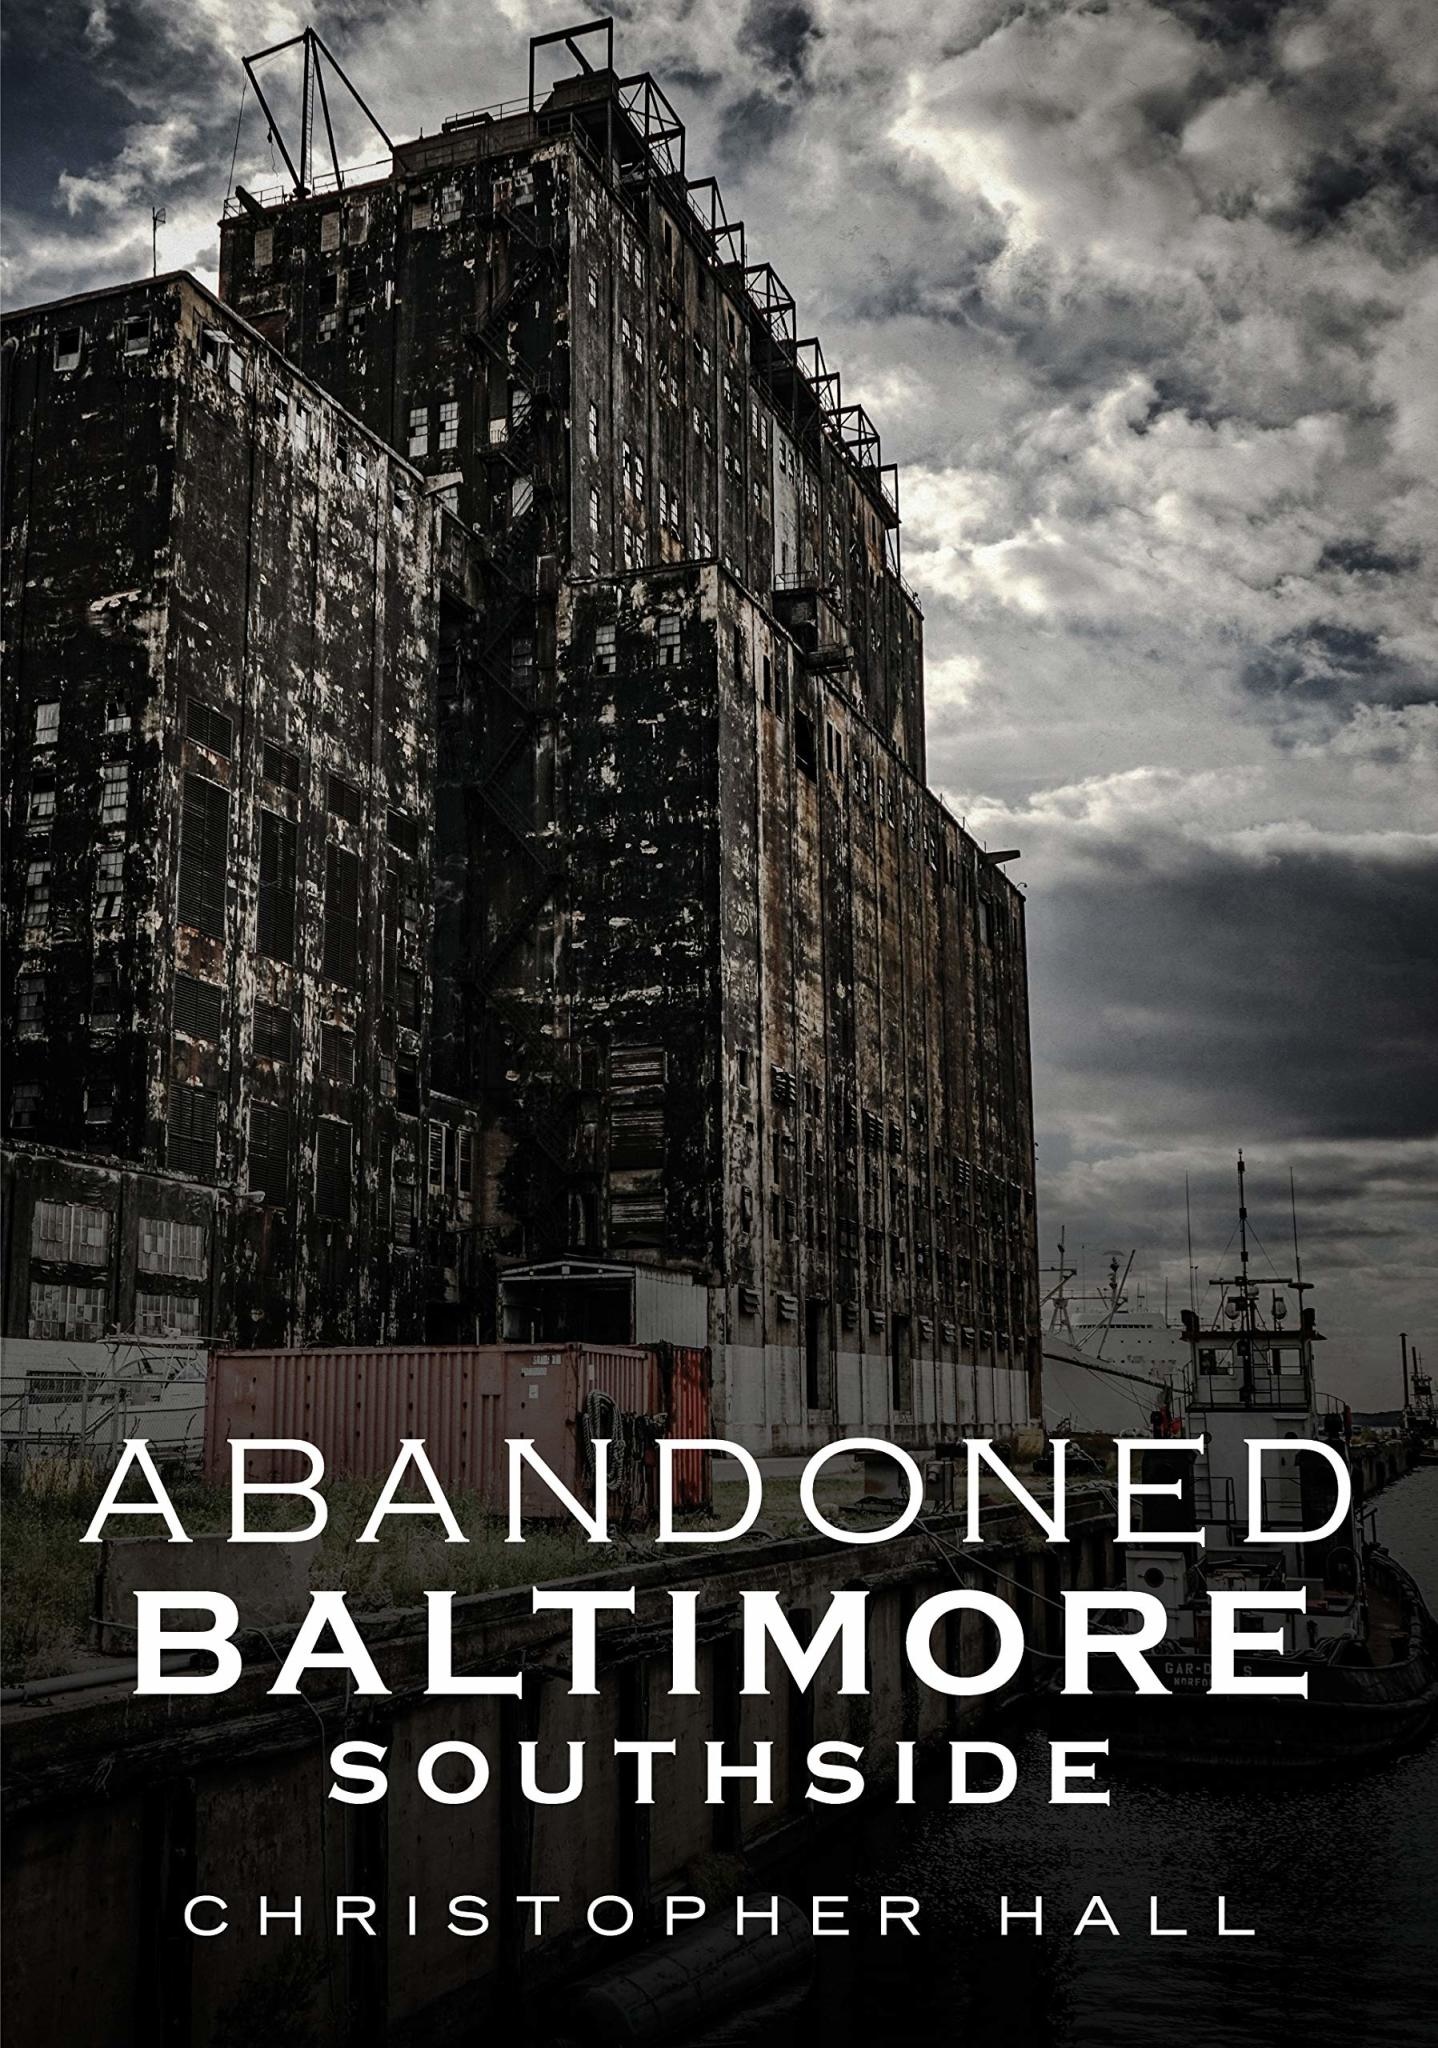 Hall- Abandoned Baltimore